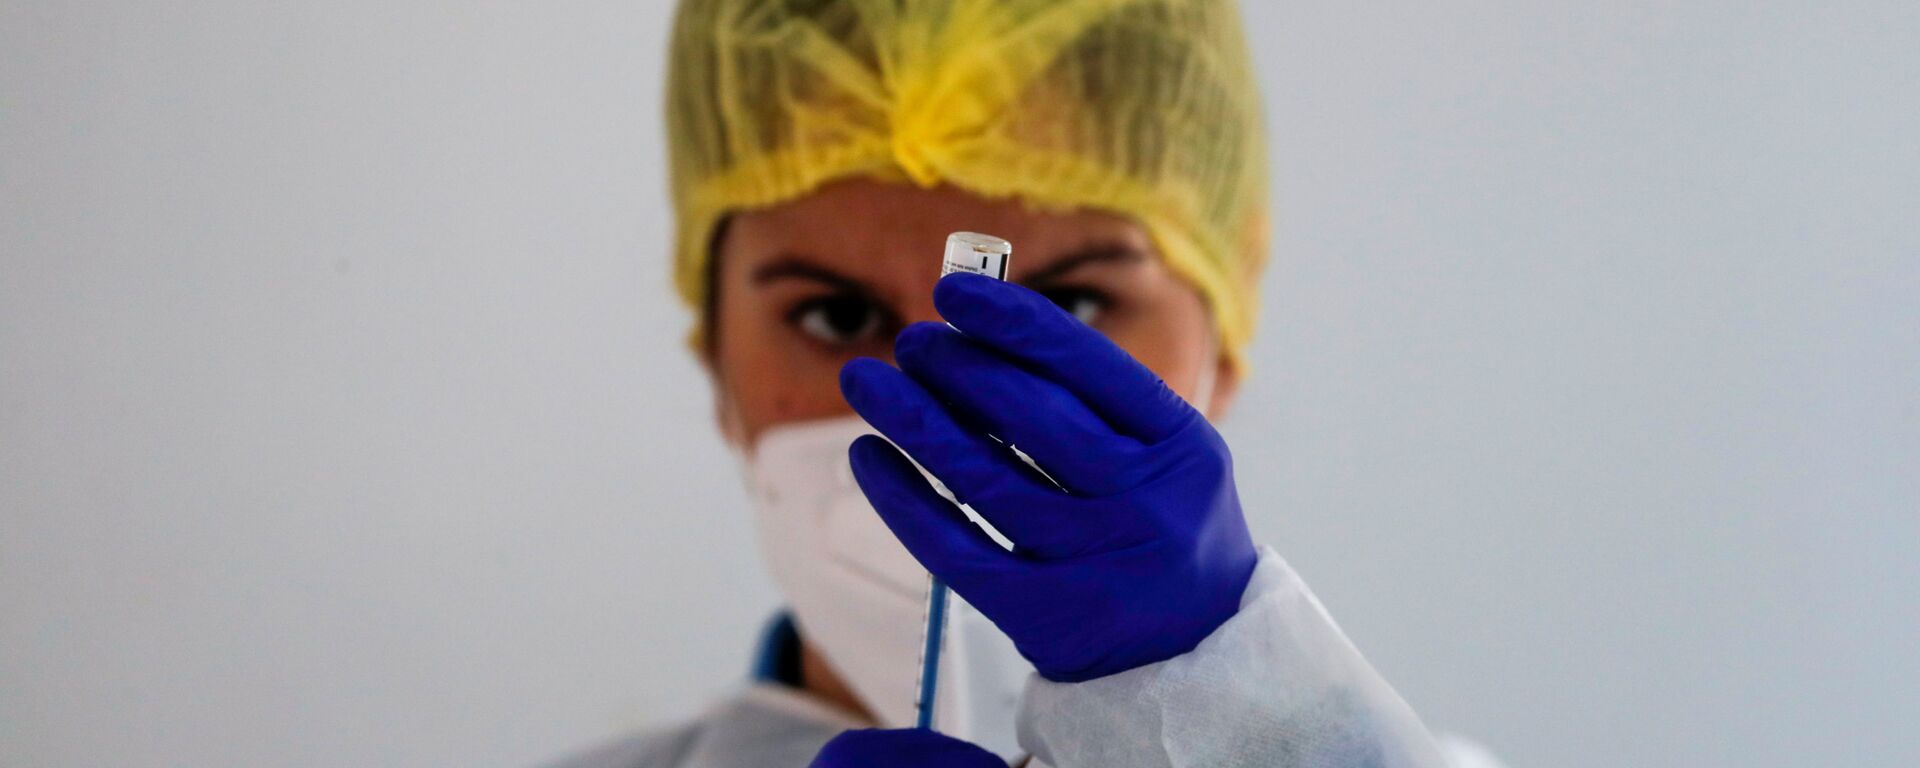 Медицинский работник готовит дозу вакцины Pfizer-BioNTech во время массовой вакцинации в Ронде, Испания - Sputnik Латвия, 1920, 16.03.2021